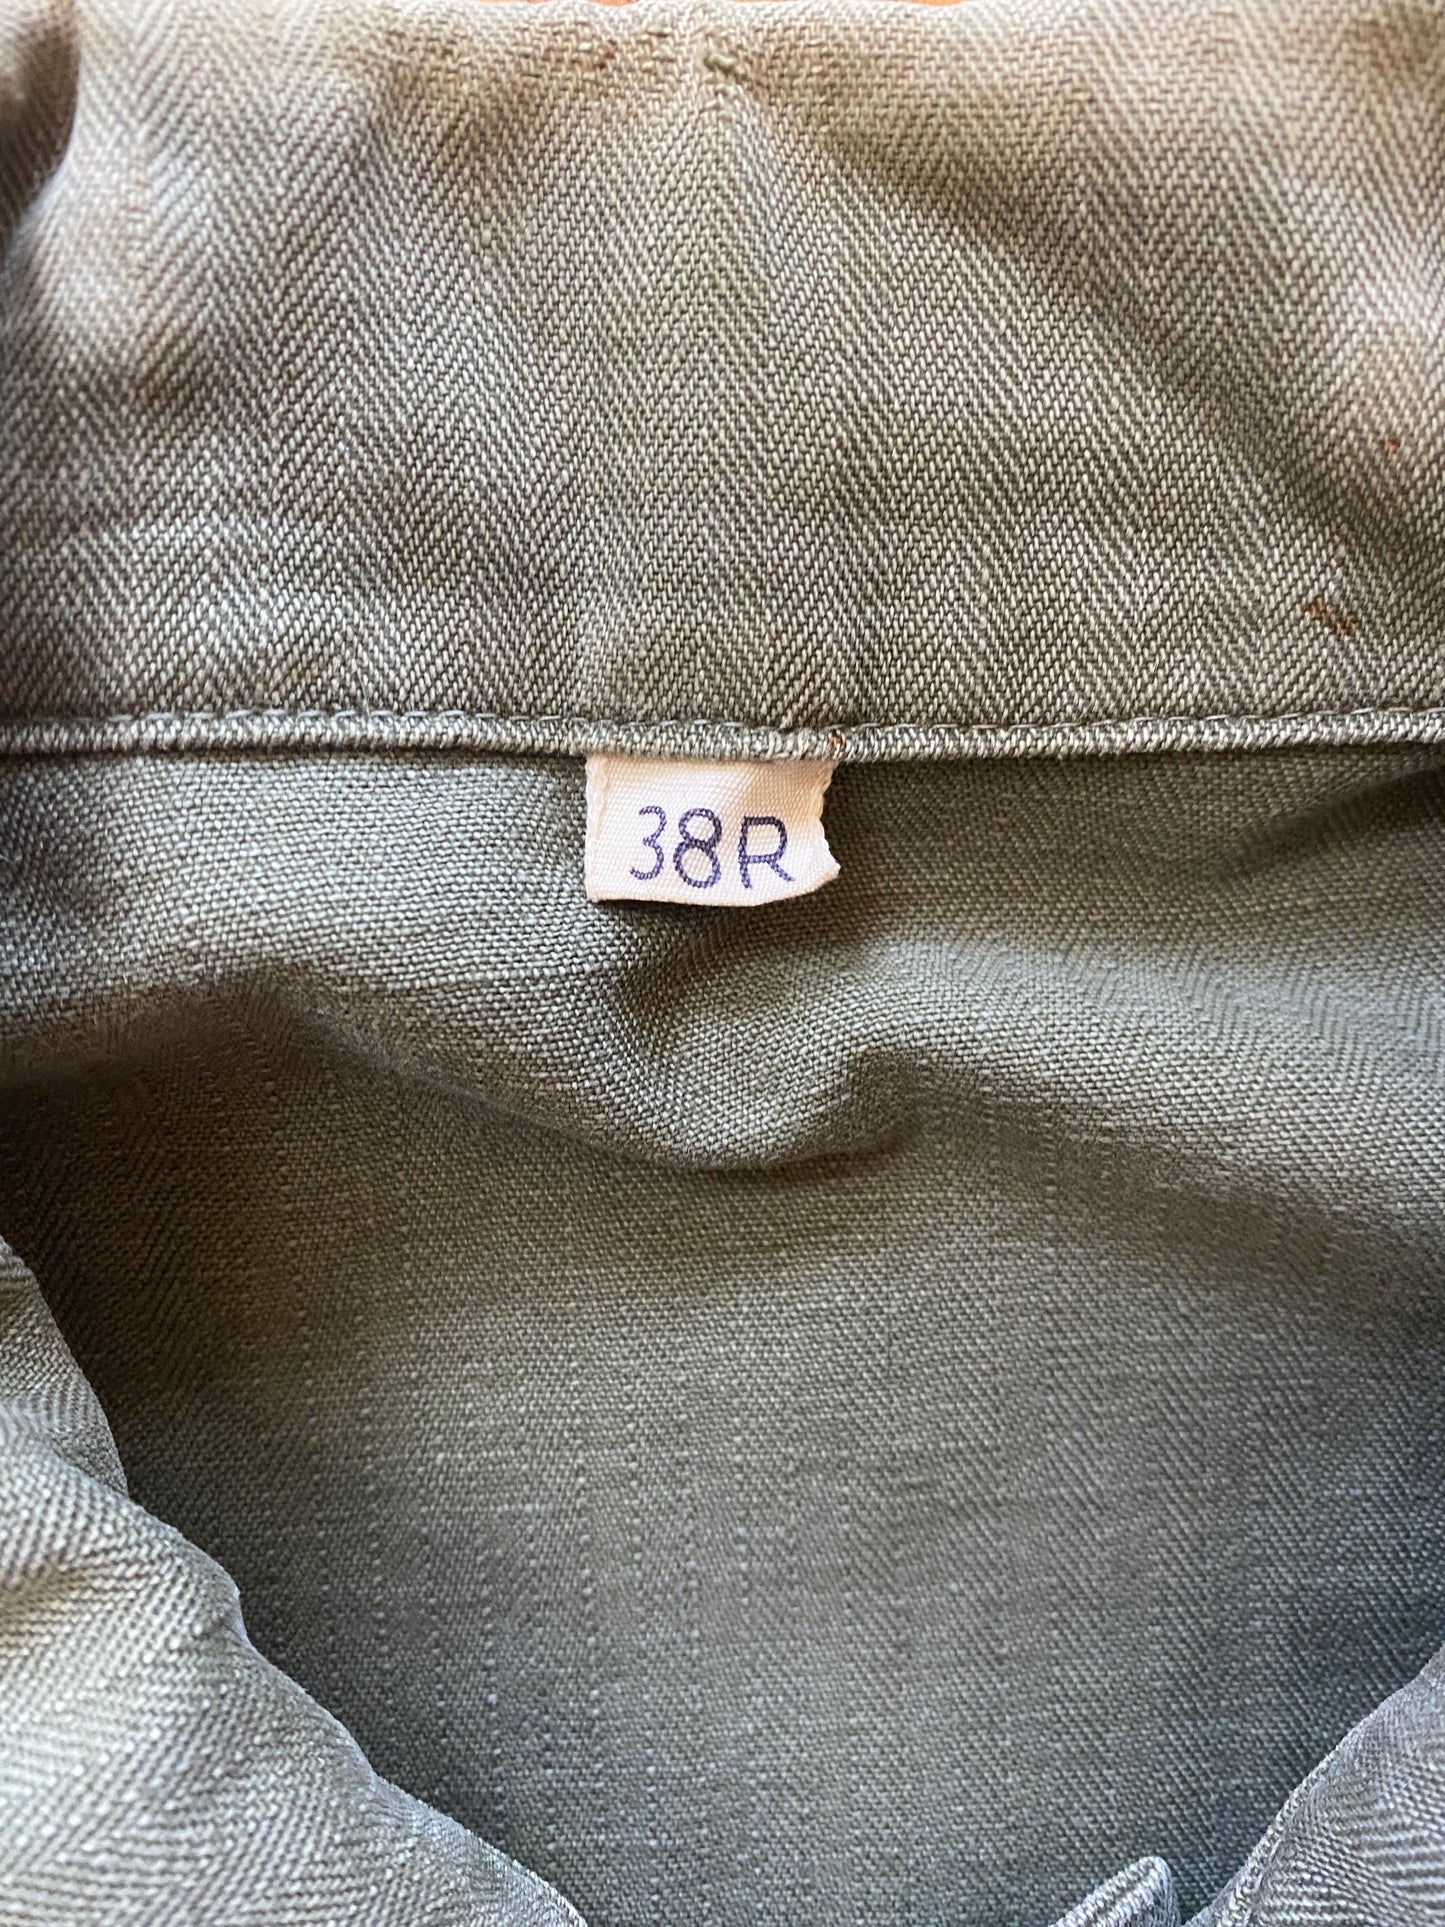 1940s HBT Hard Labor Battalion Prisoner Fatigue Jacket Size 38R